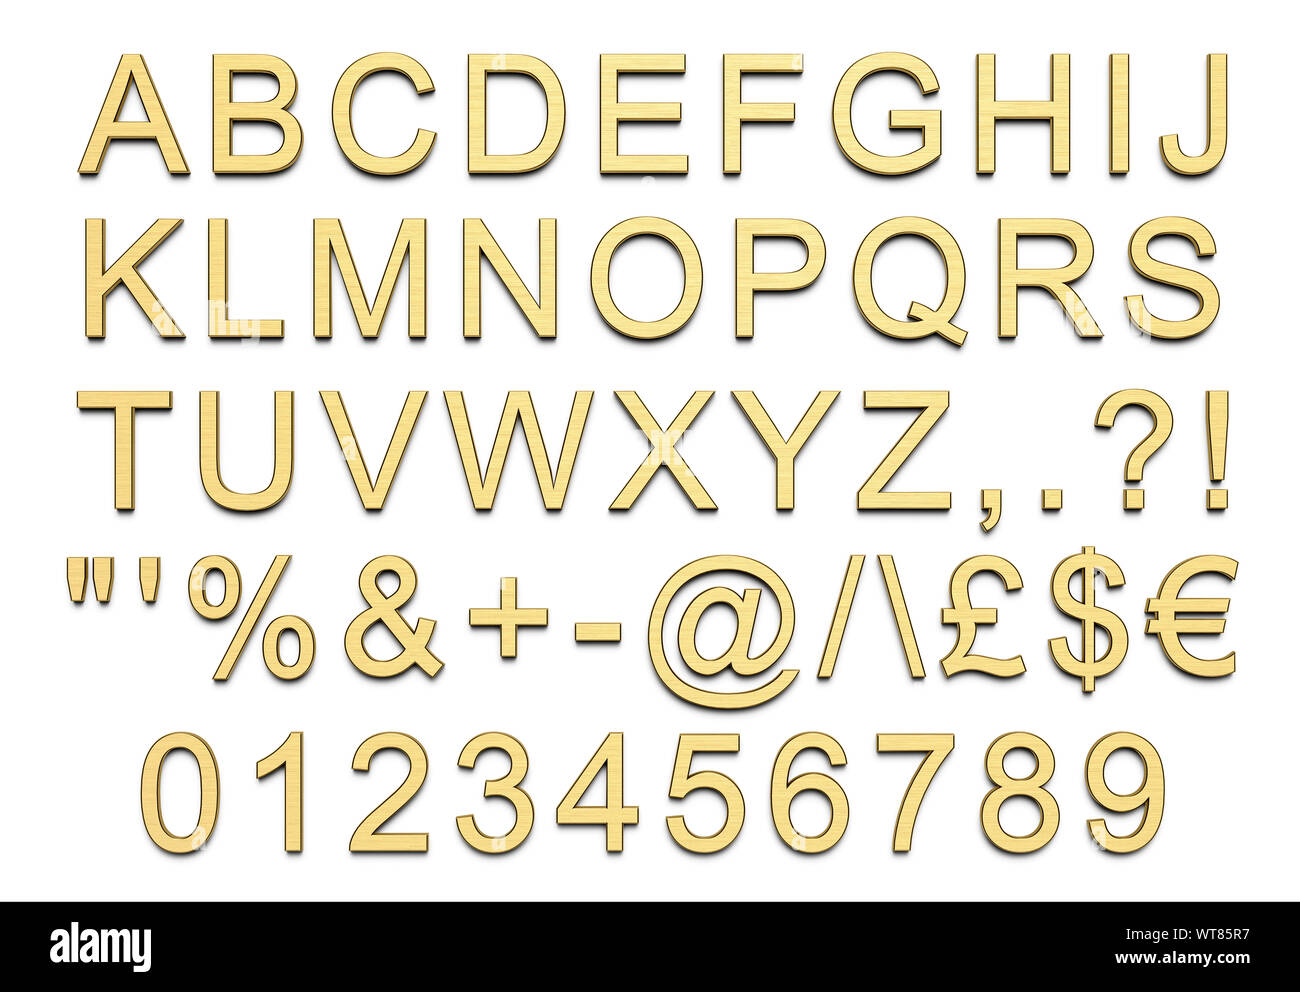 Letras, números y símbolos del alfabeto en mayúsculas, oro pulido Foto de stock